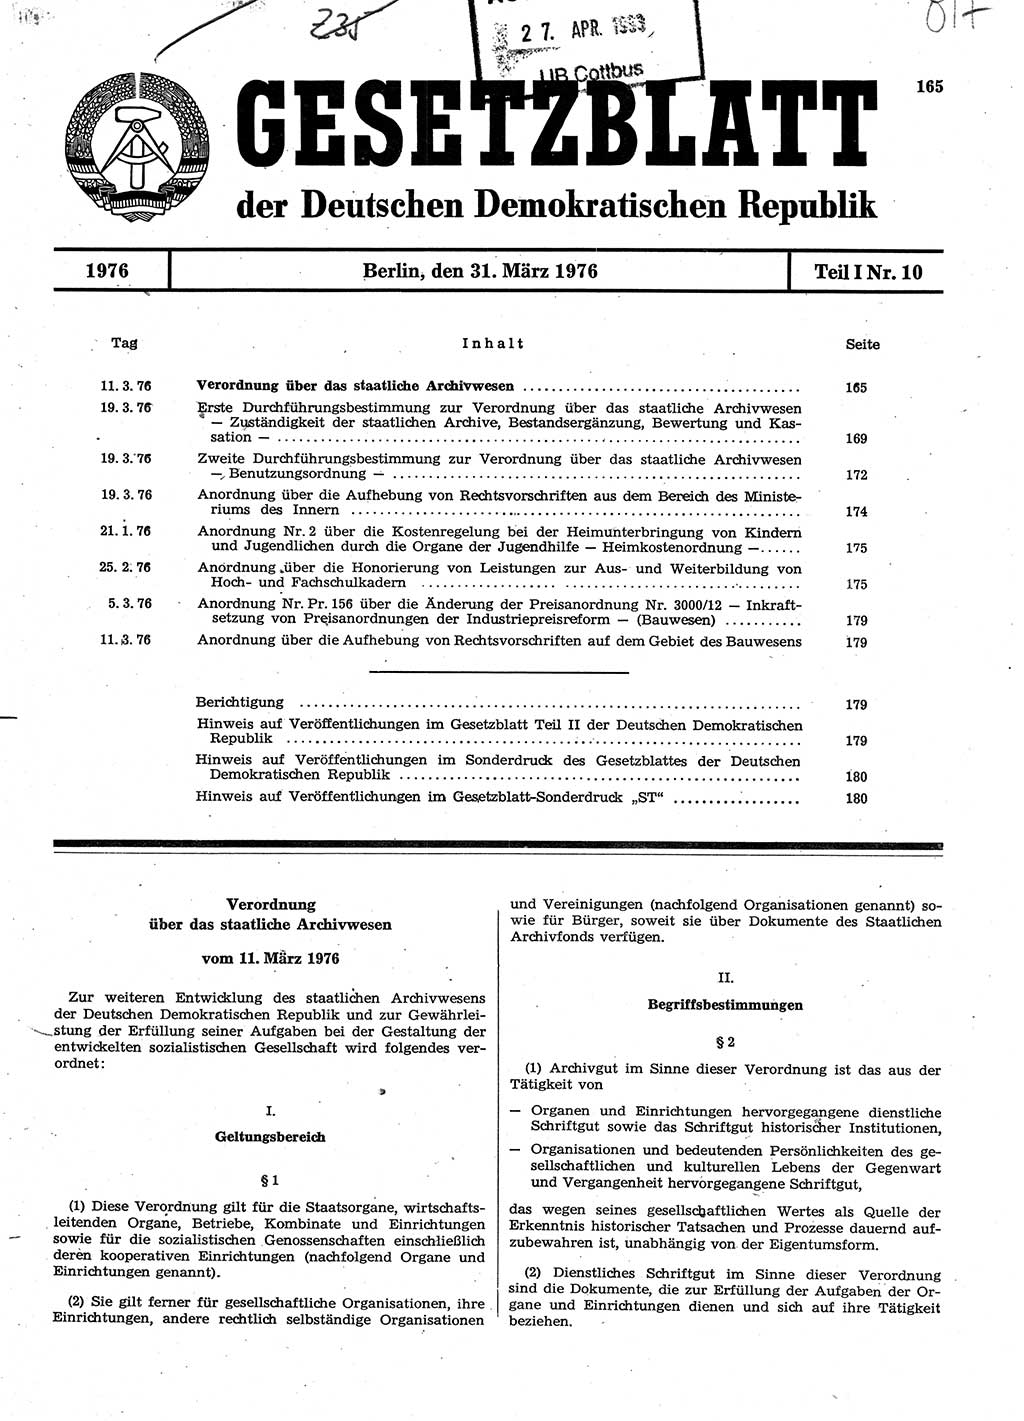 Gesetzblatt (GBl.) der Deutschen Demokratischen Republik (DDR) Teil Ⅰ 1976, Seite 165 (GBl. DDR Ⅰ 1976, S. 165)